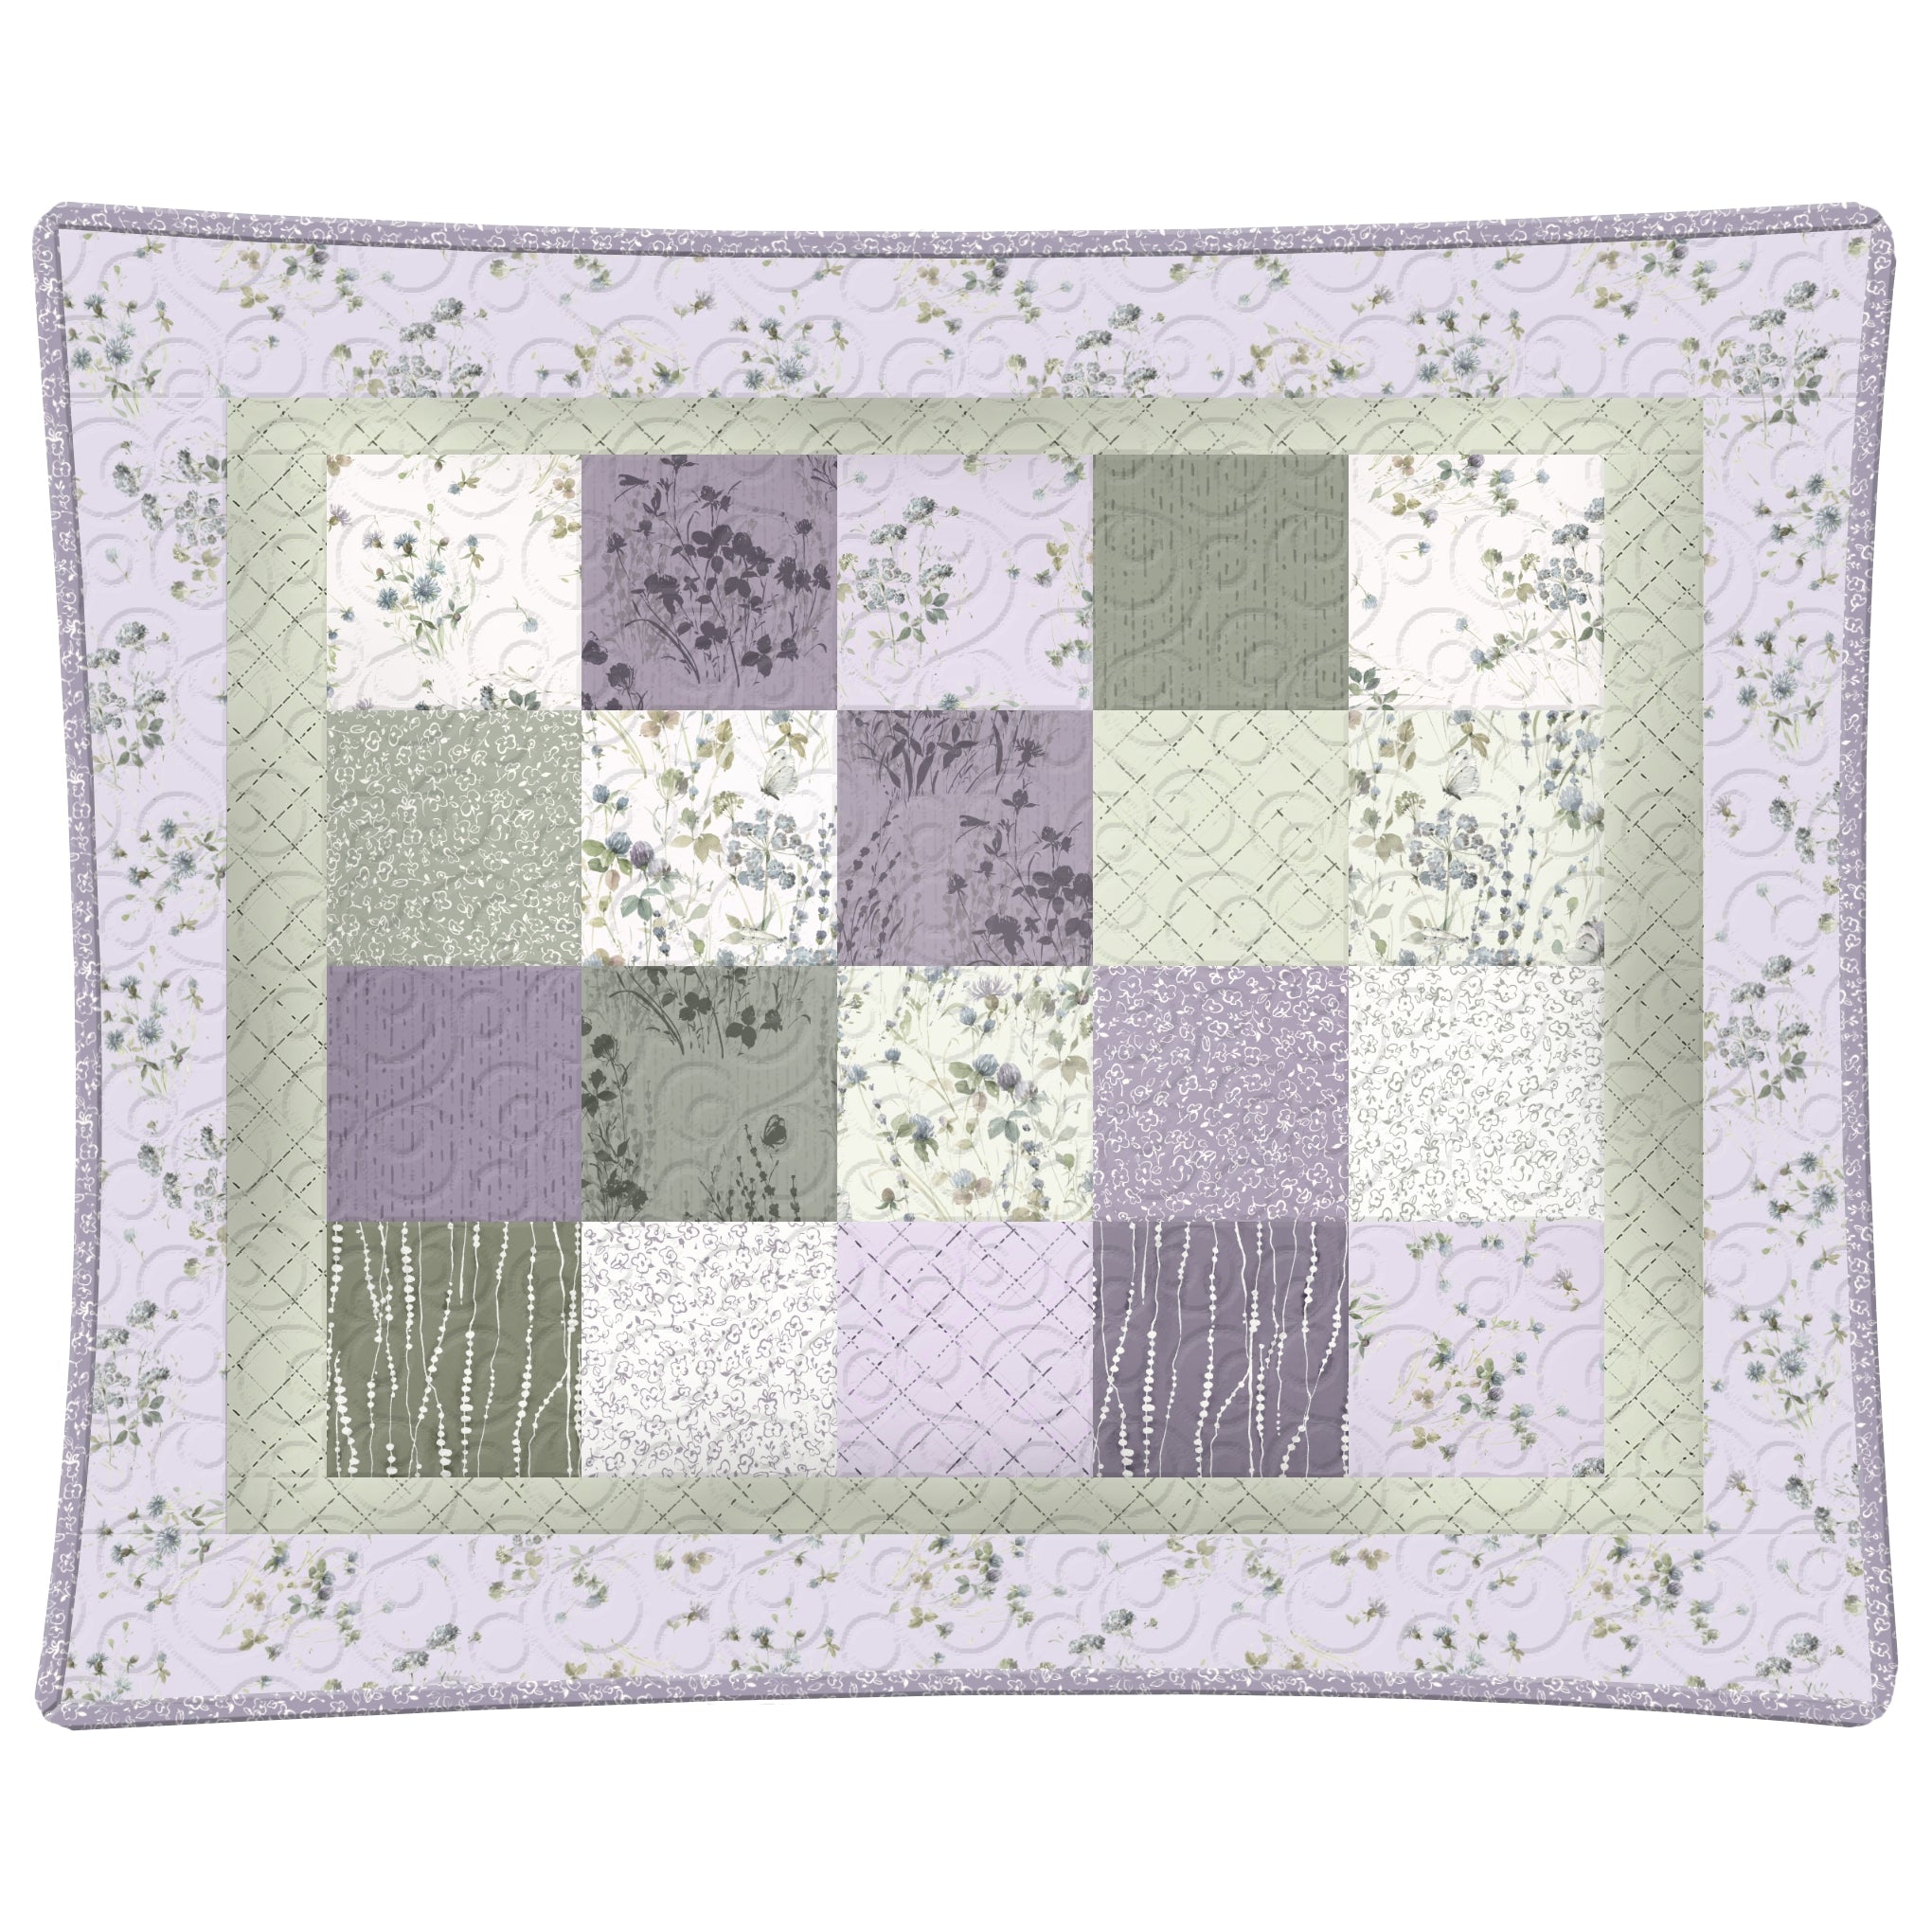 Set of 2 Pillow Shams Pattern - Free Digital Download